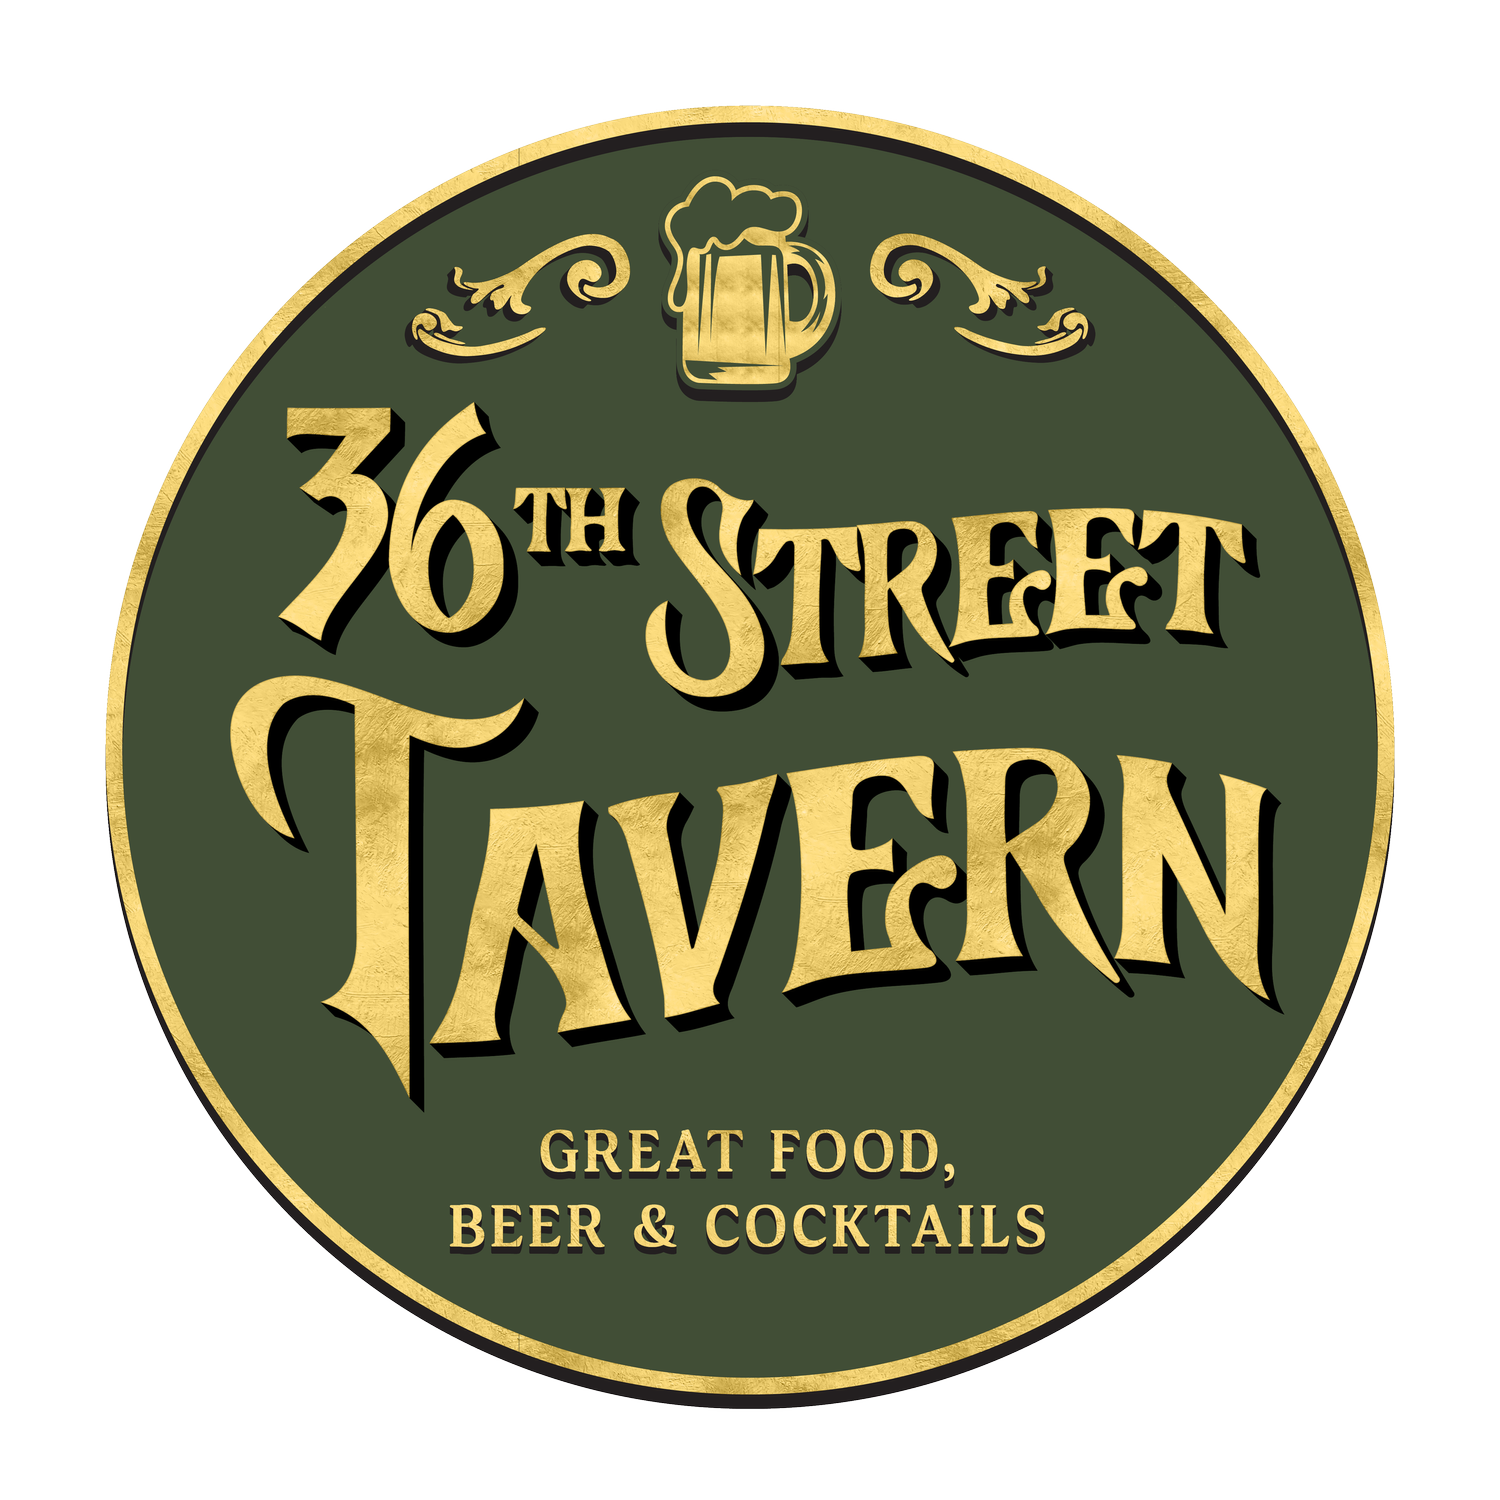 36th Street Tavern